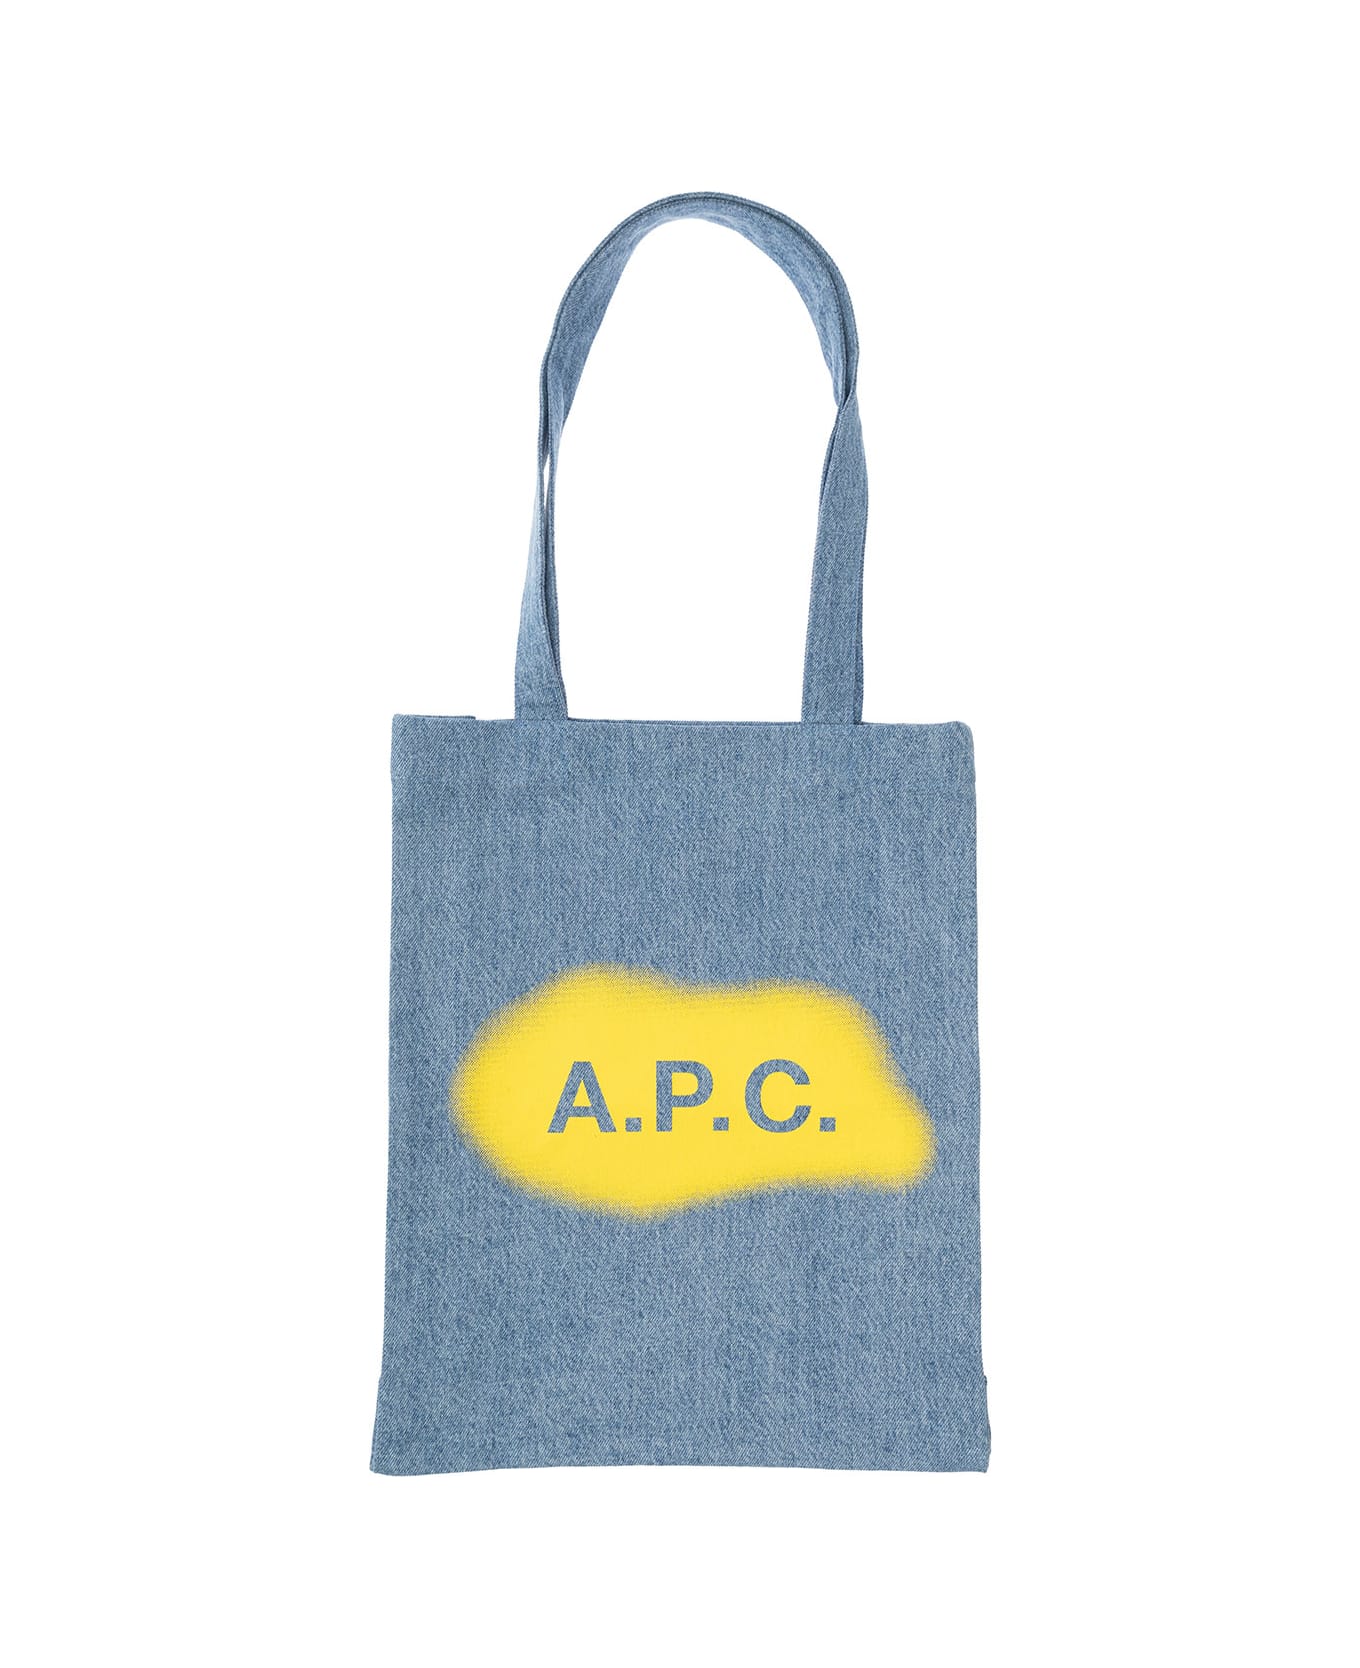 A.P.C. Tote Bag - Blue